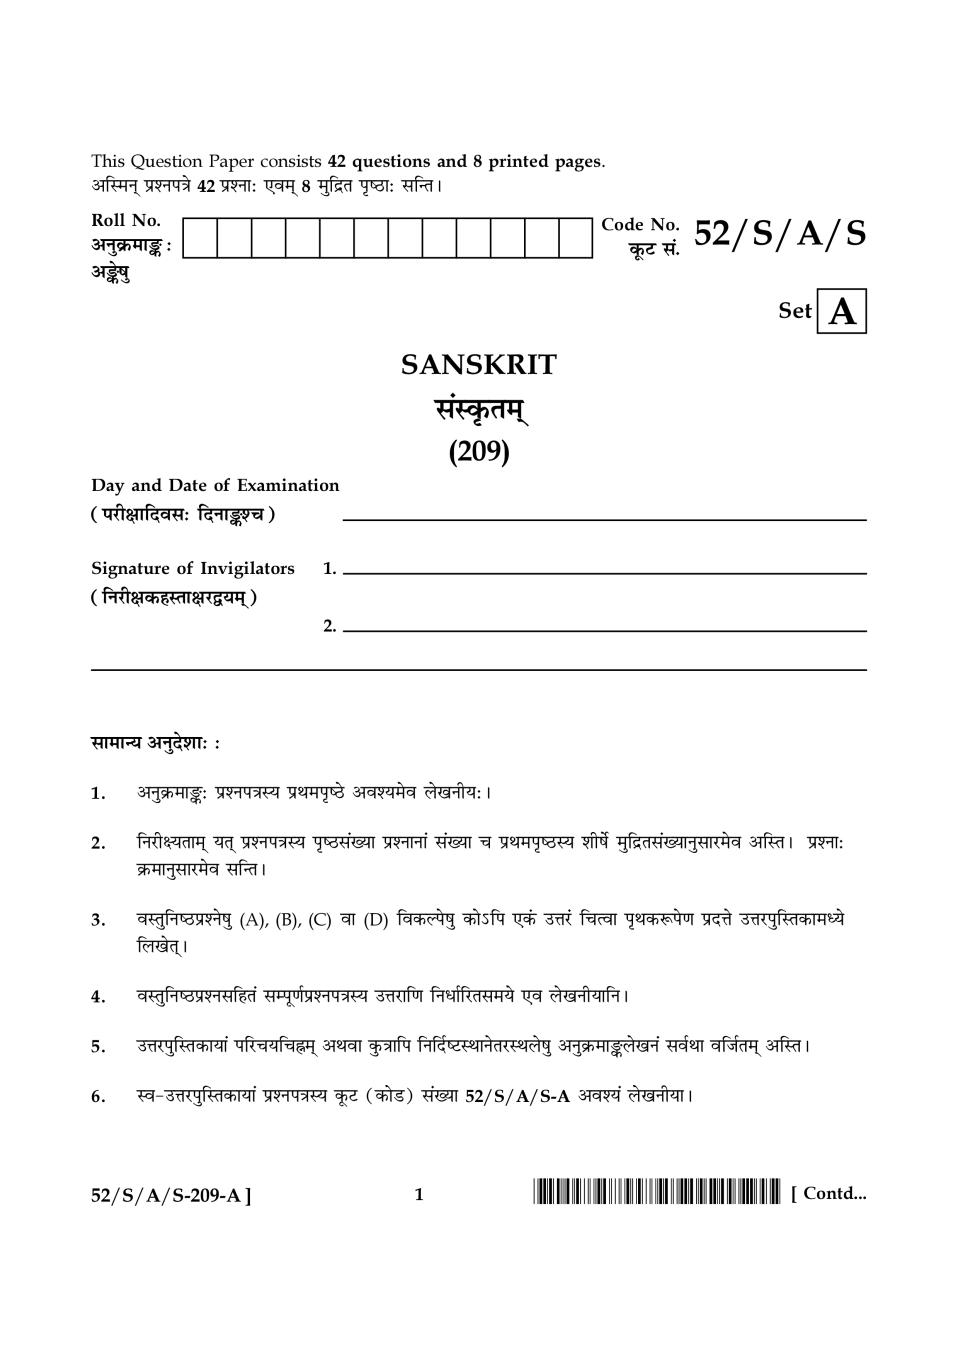 NIOS Class 10 Question Paper Apr 2016 - Sanskrit - Page 1